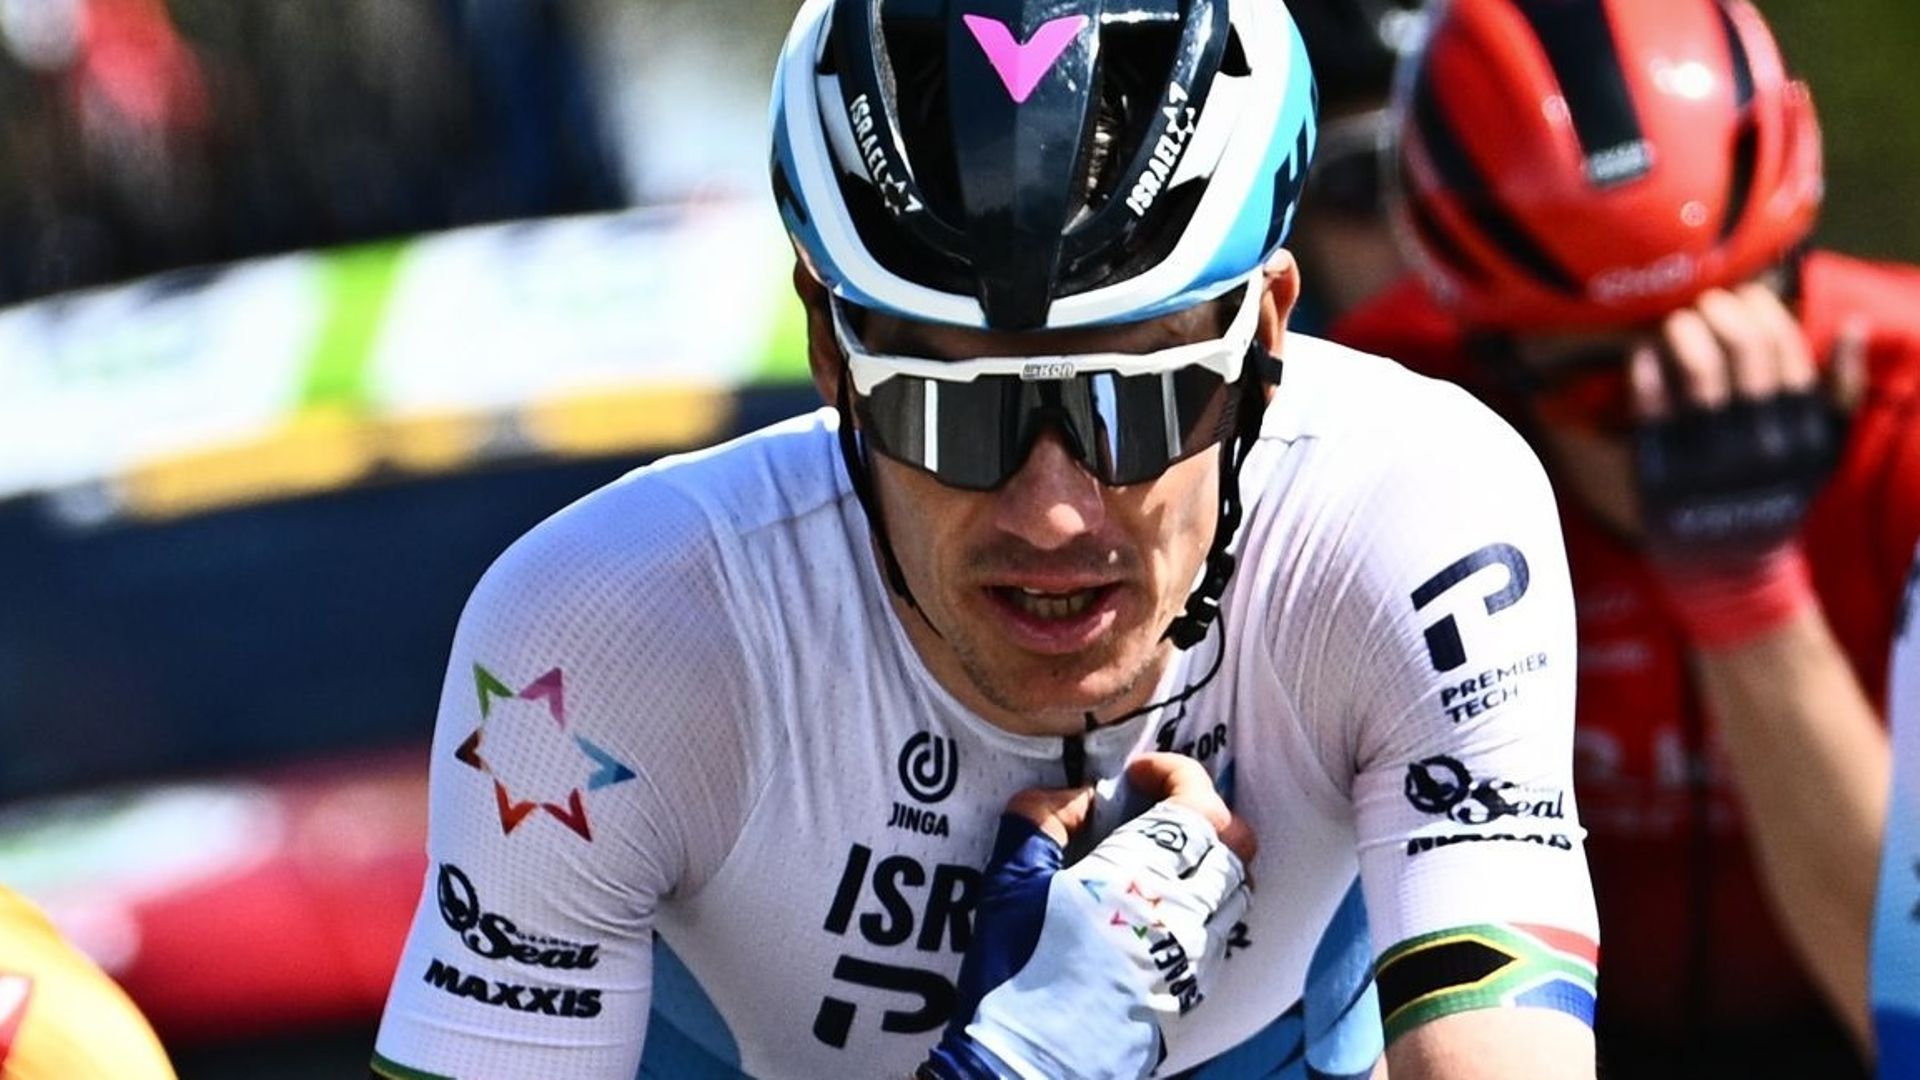 Cyclisme : Daryl Impey a remporté la 4ème étape du Tour de Suisse à Brunnen. Le Britannique Stephen Williams est toujours leader de l’épreuve. Remco Evenpoel est en embuscade, à la 11ème place.